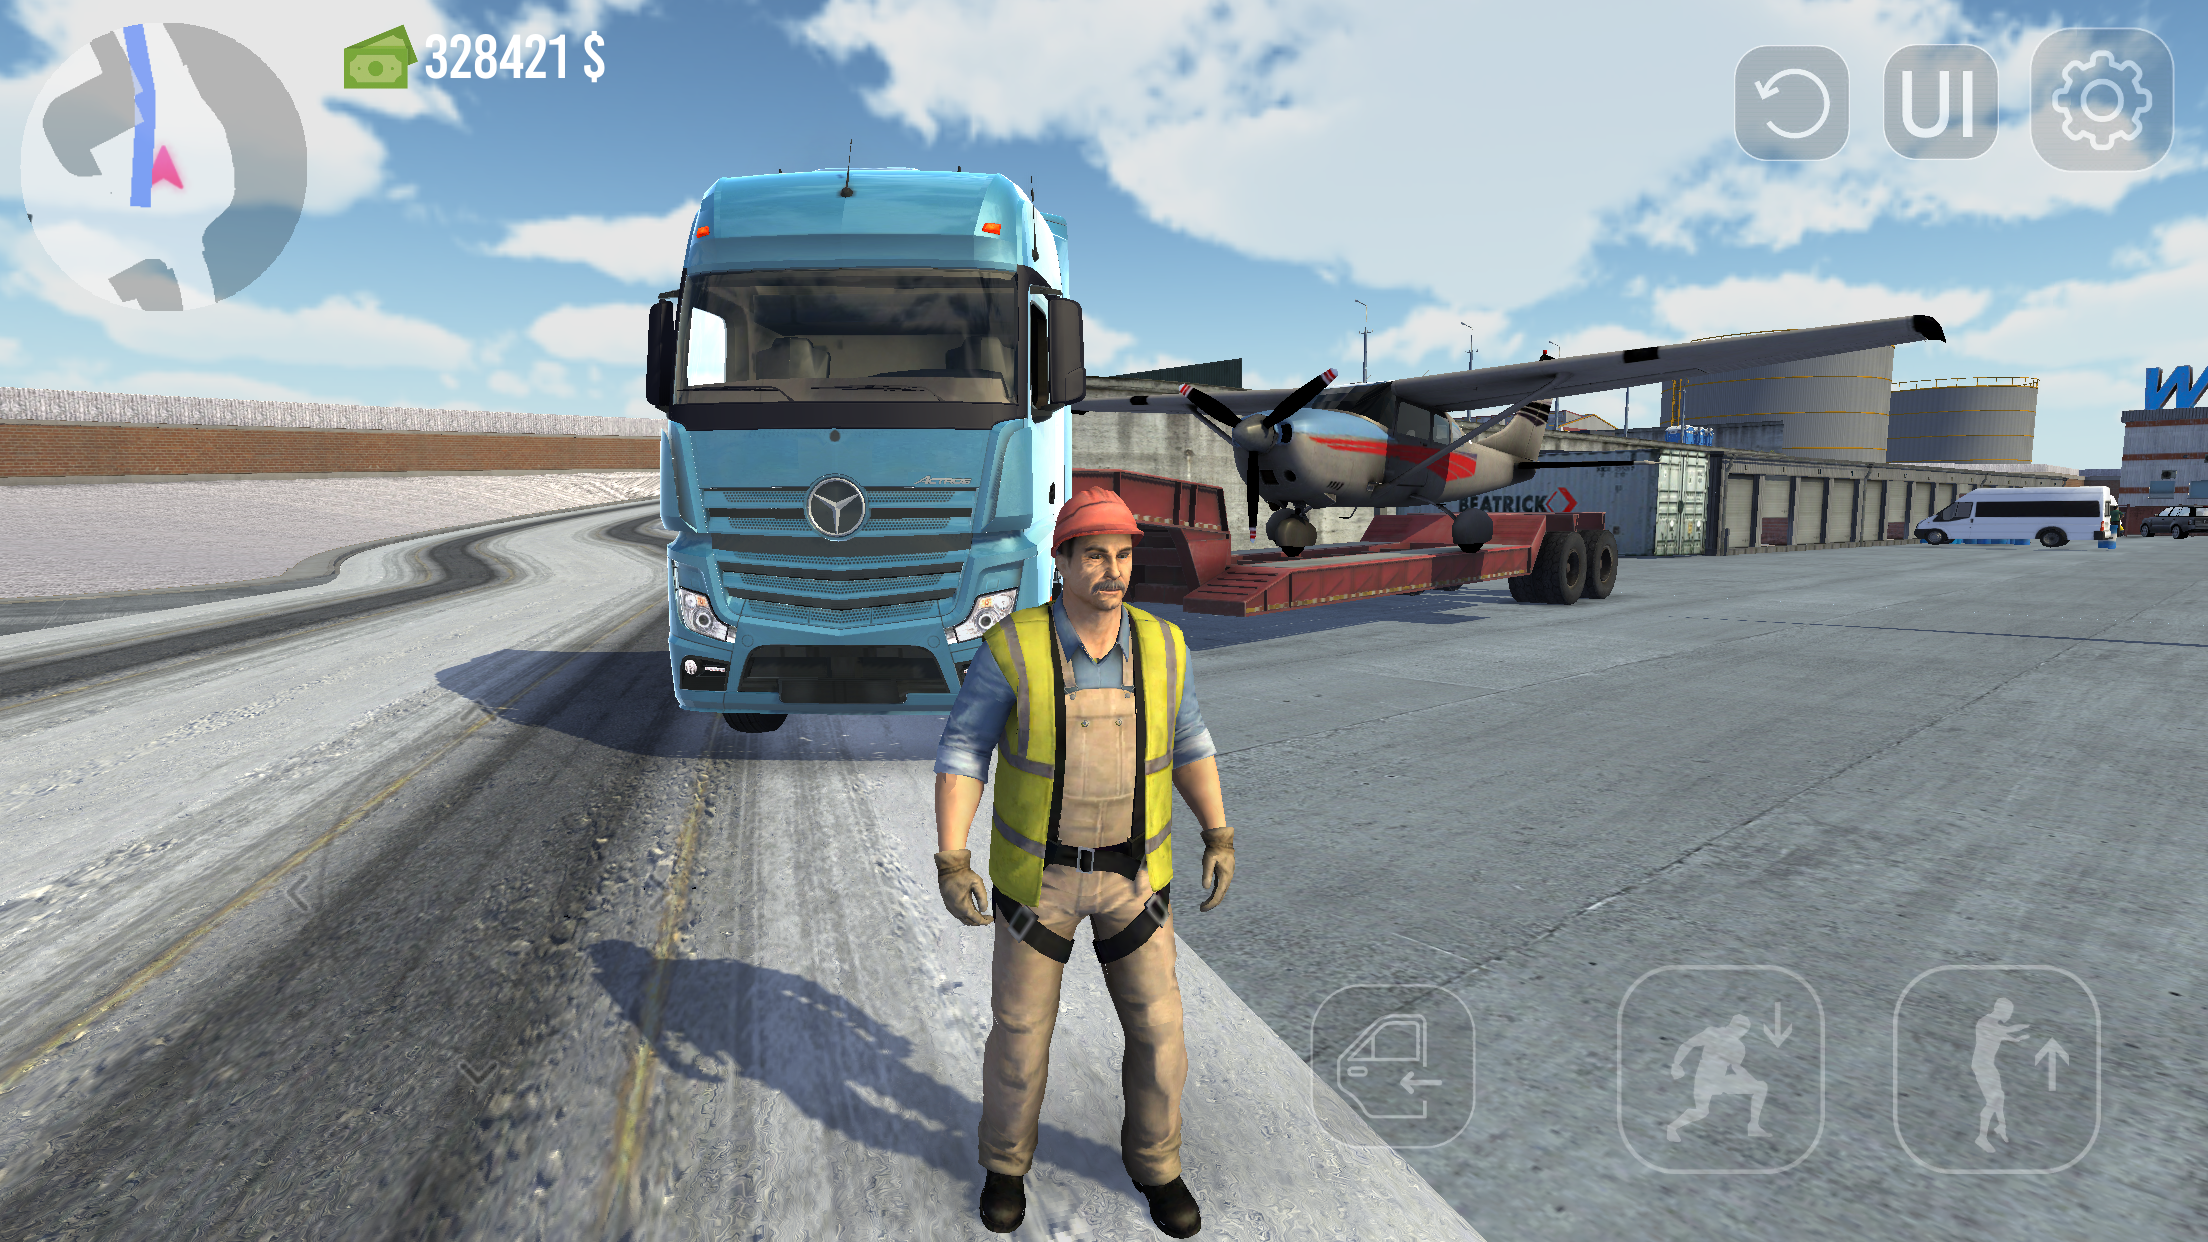 Truck simulate ultimate Mod dinheiro infinito 💰 2023 atualizado. 